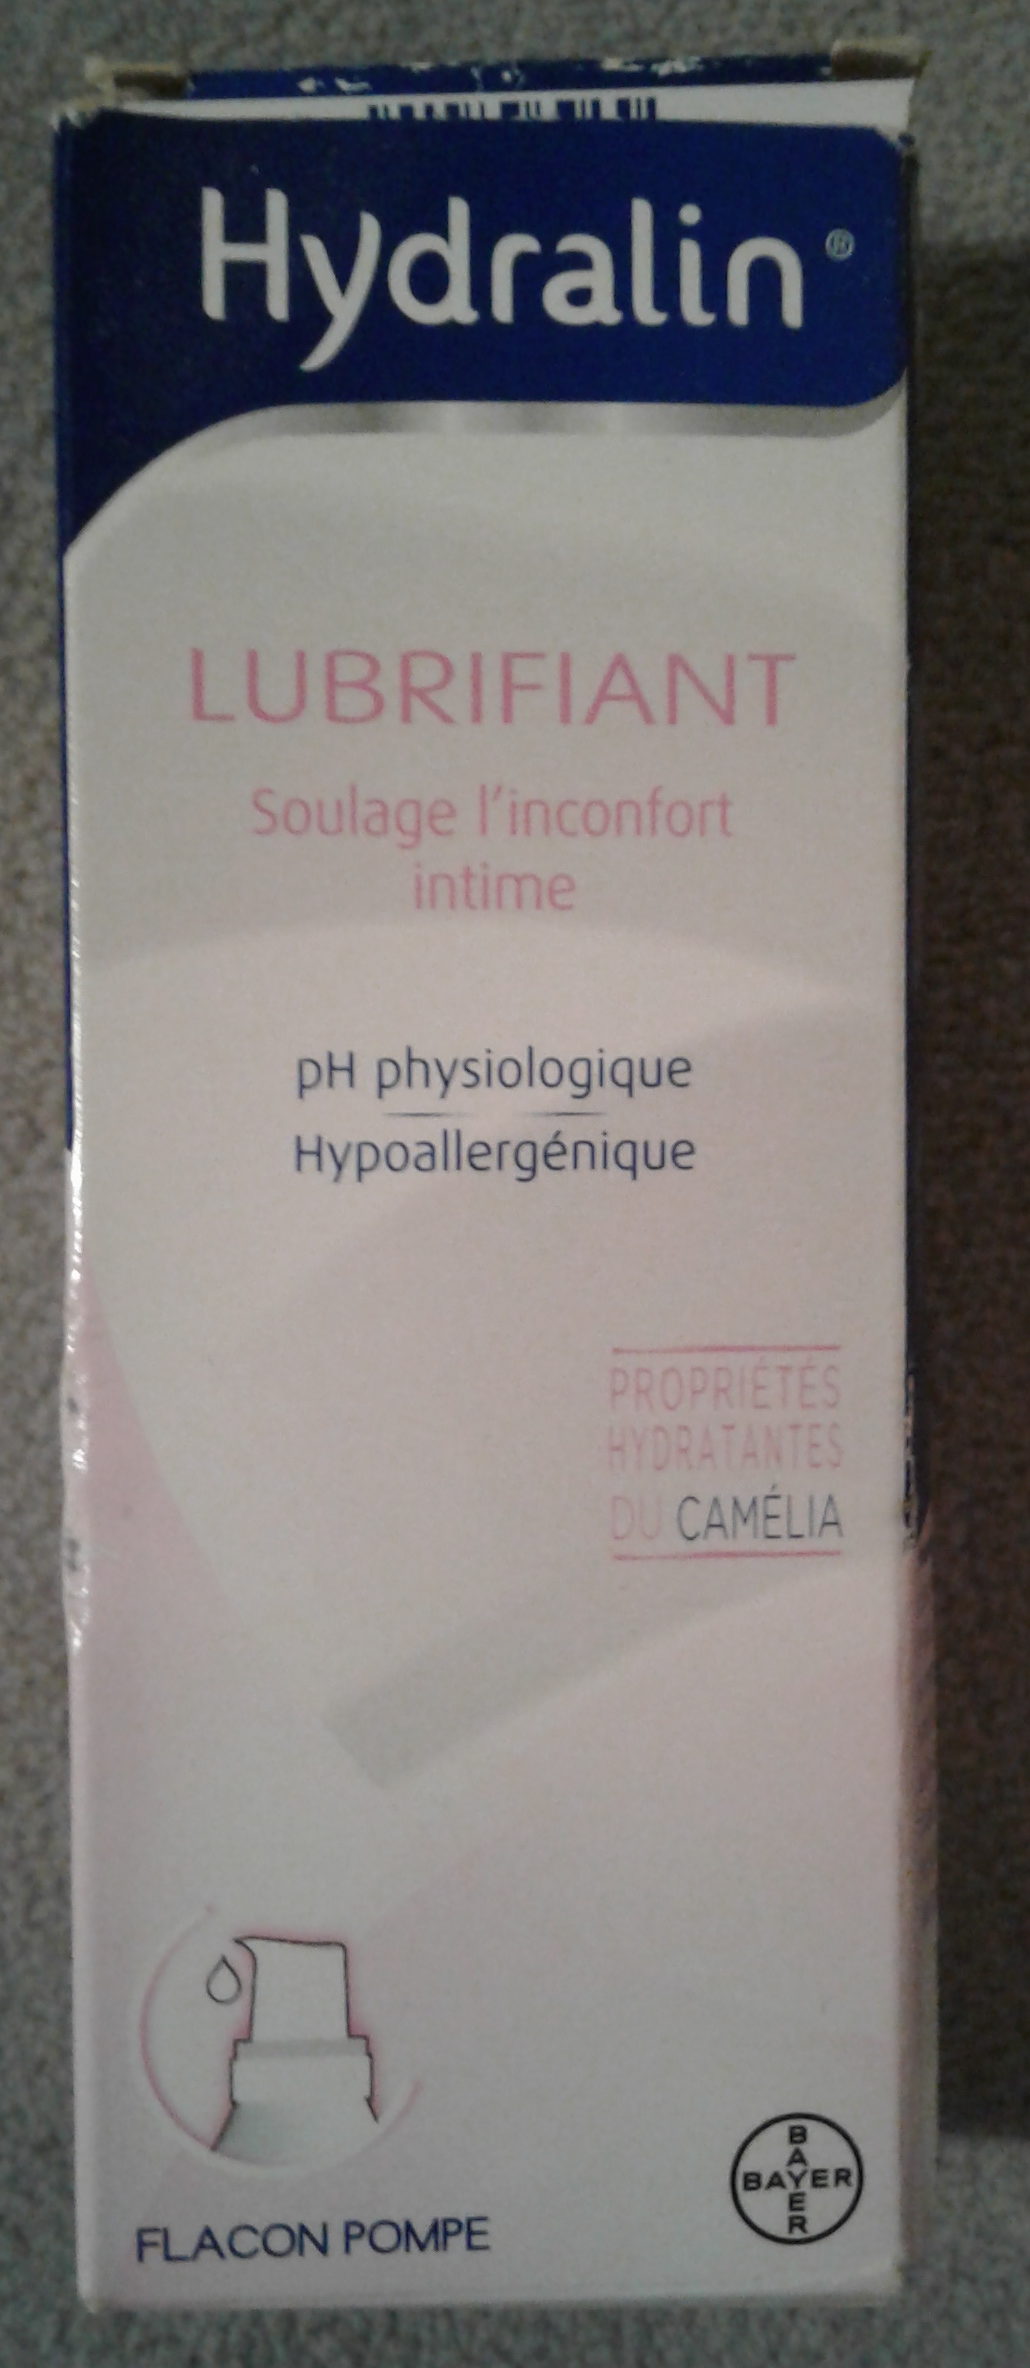 Hydralin Lubrifiant - Product - fr